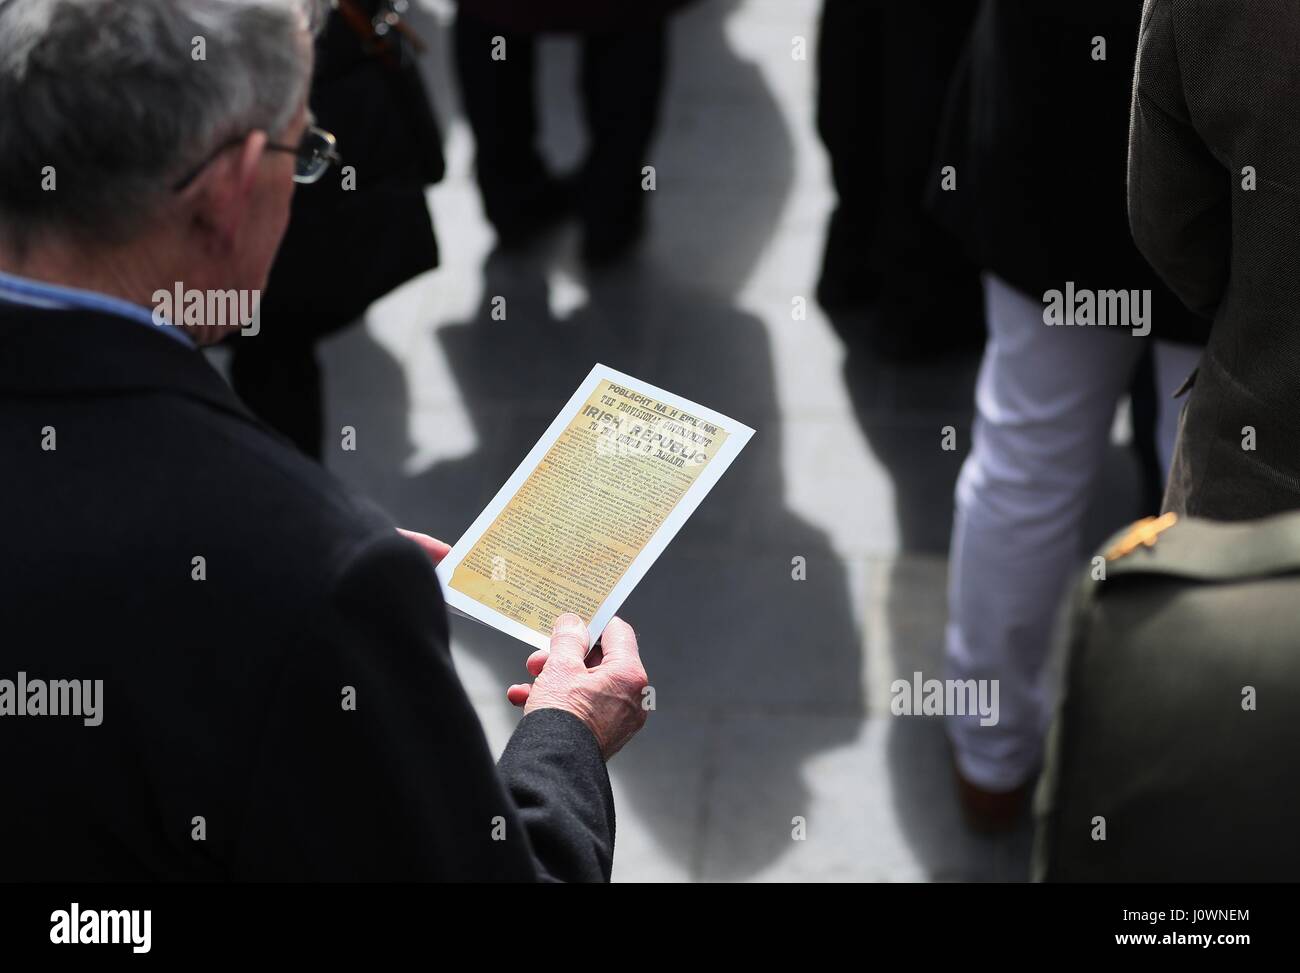 Un membre du public lit une copie de la Proclamation au cours d'une cérémonie pour marquer le 101e anniversaire de la Pâques 1916 qui se lève devant l'GPO, dans la rue O'Connell, Dublin. Banque D'Images